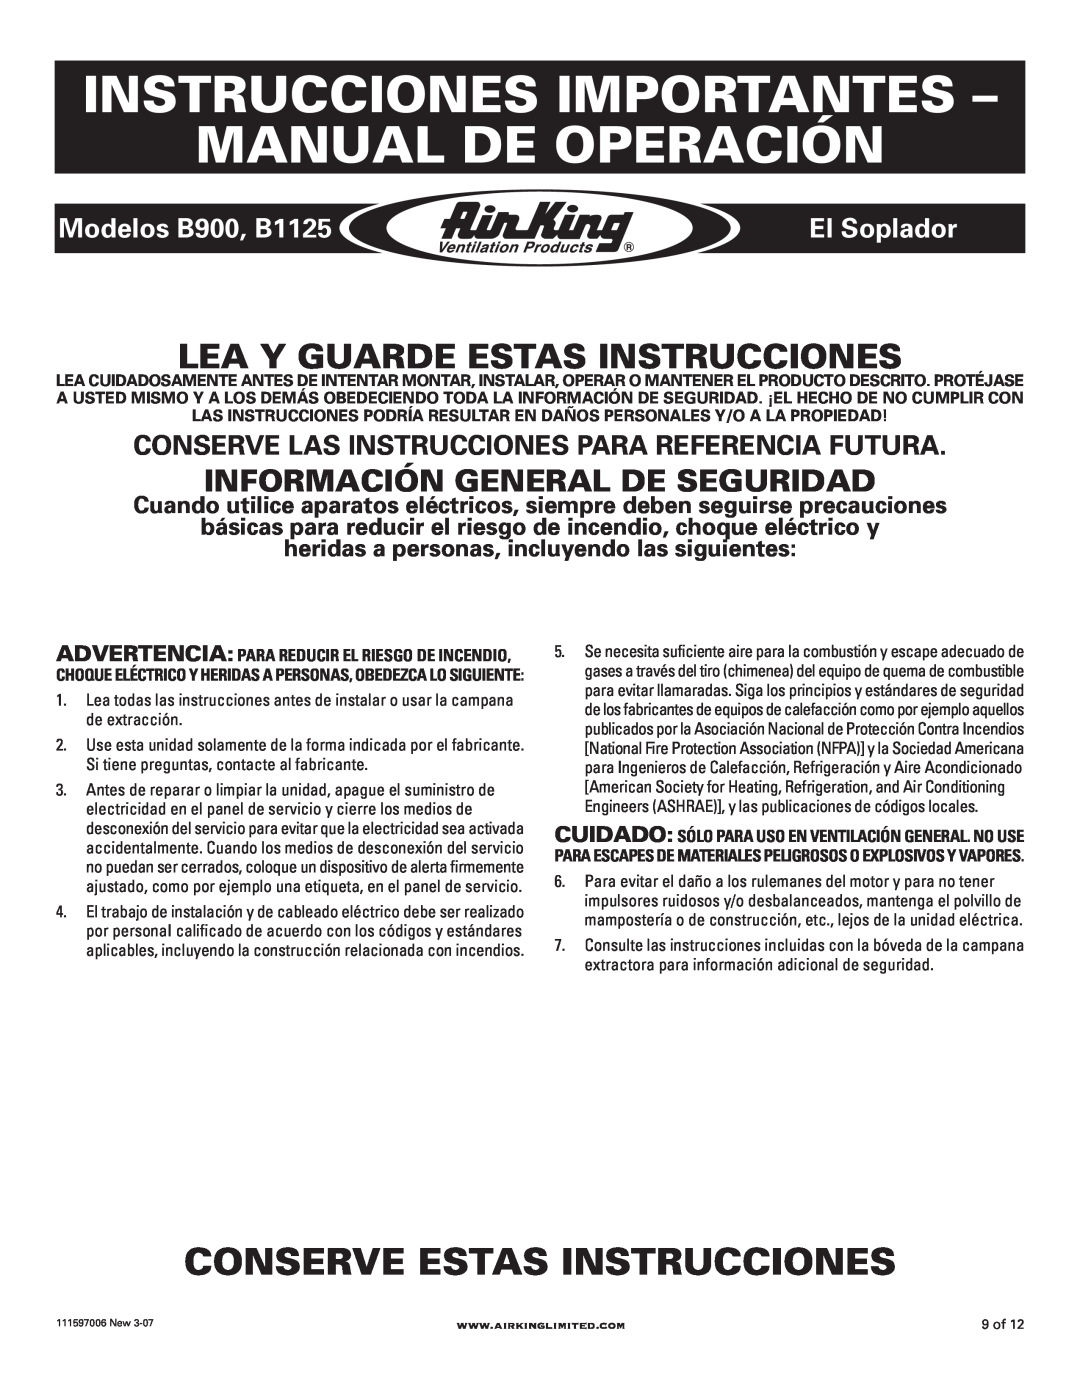 Air King manual Instrucciones Importantes - Manual De Operación, Conserve Estas Instrucciones, Modelos B900, B1125 